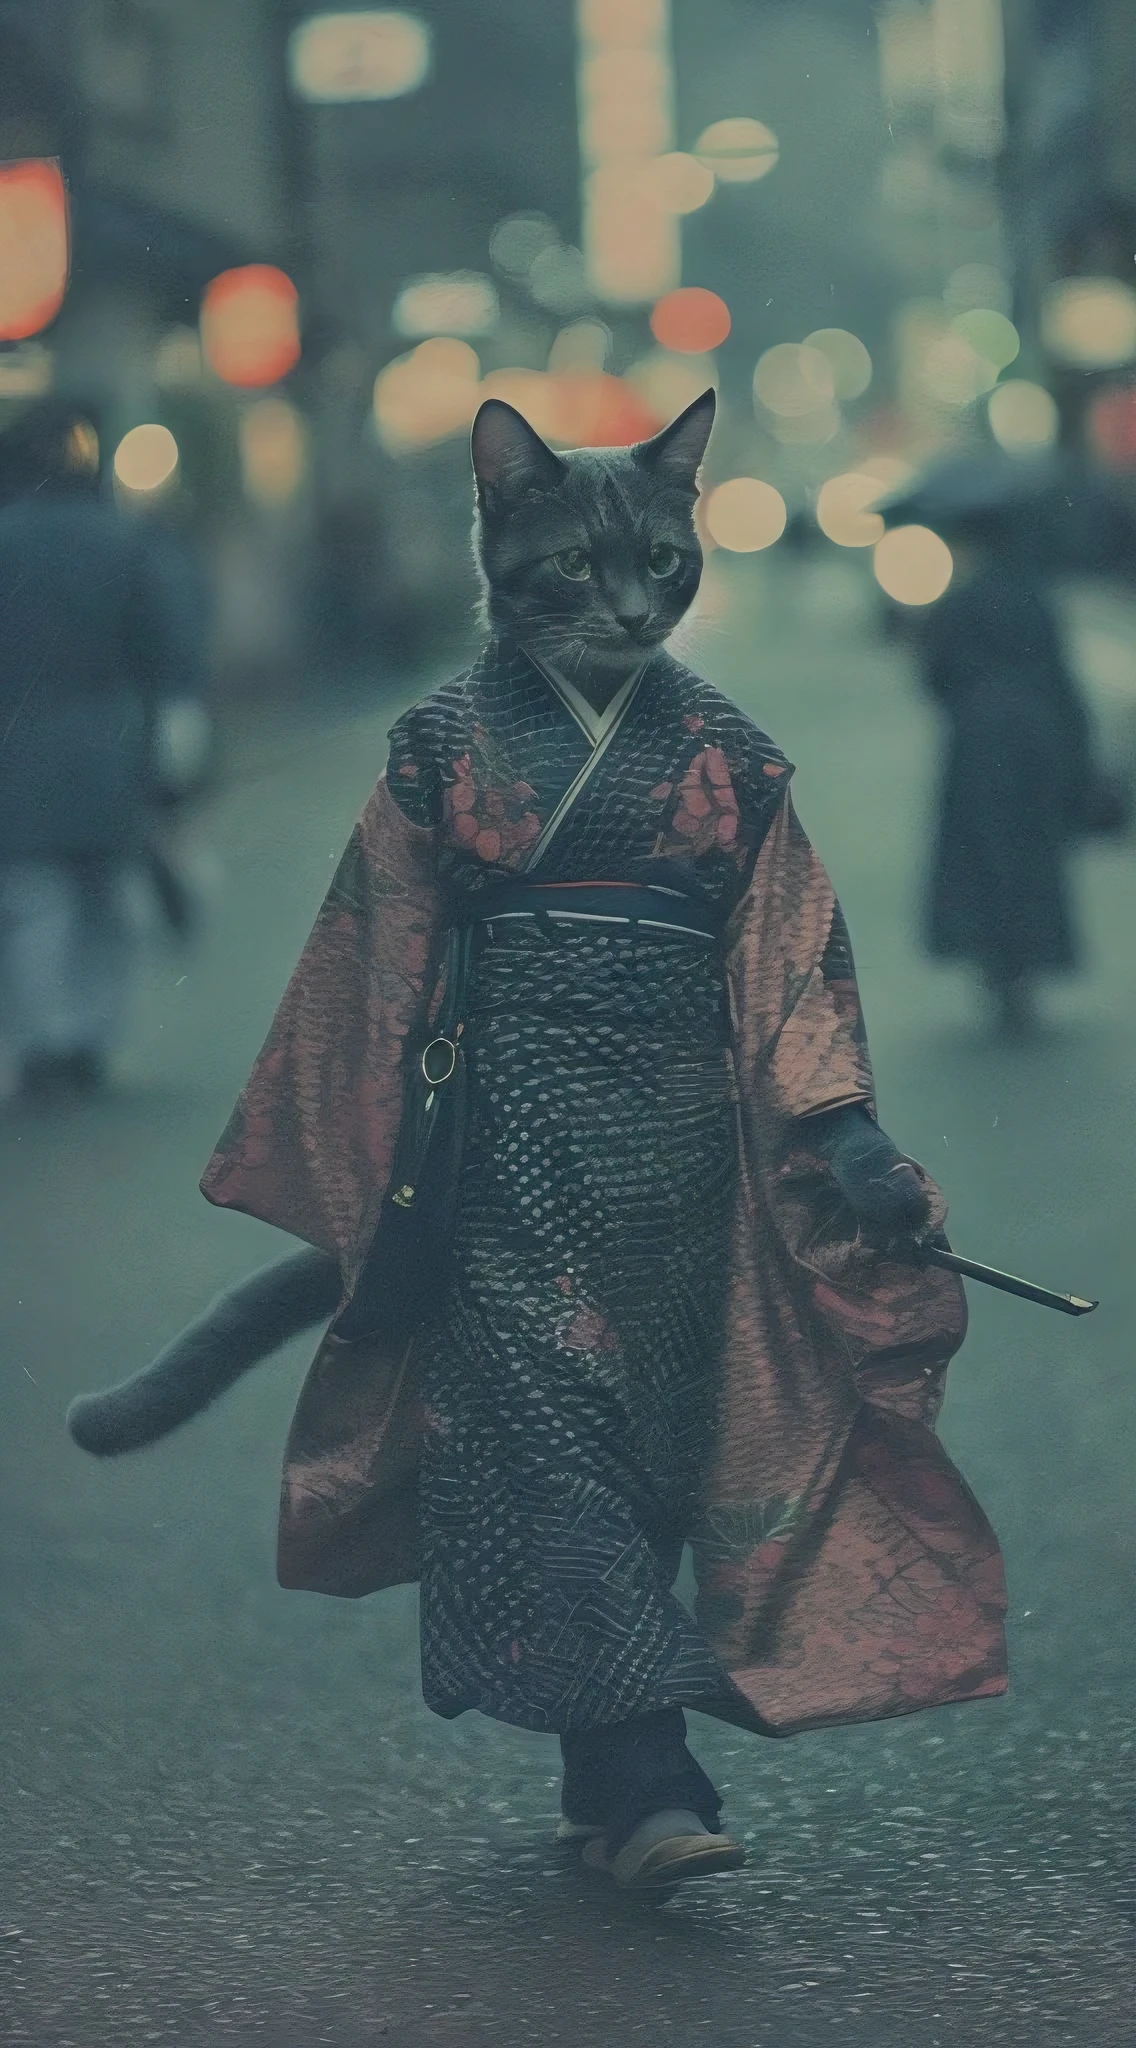 Un gato humanoide con un hermoso kimono., caminando por las calles de Kioto, foto analogica, detalles intrincados, iluminación cinematográfica, paleta de colores apagados, grano de la película, profundidad de campo, alta calidad, Obra maestra